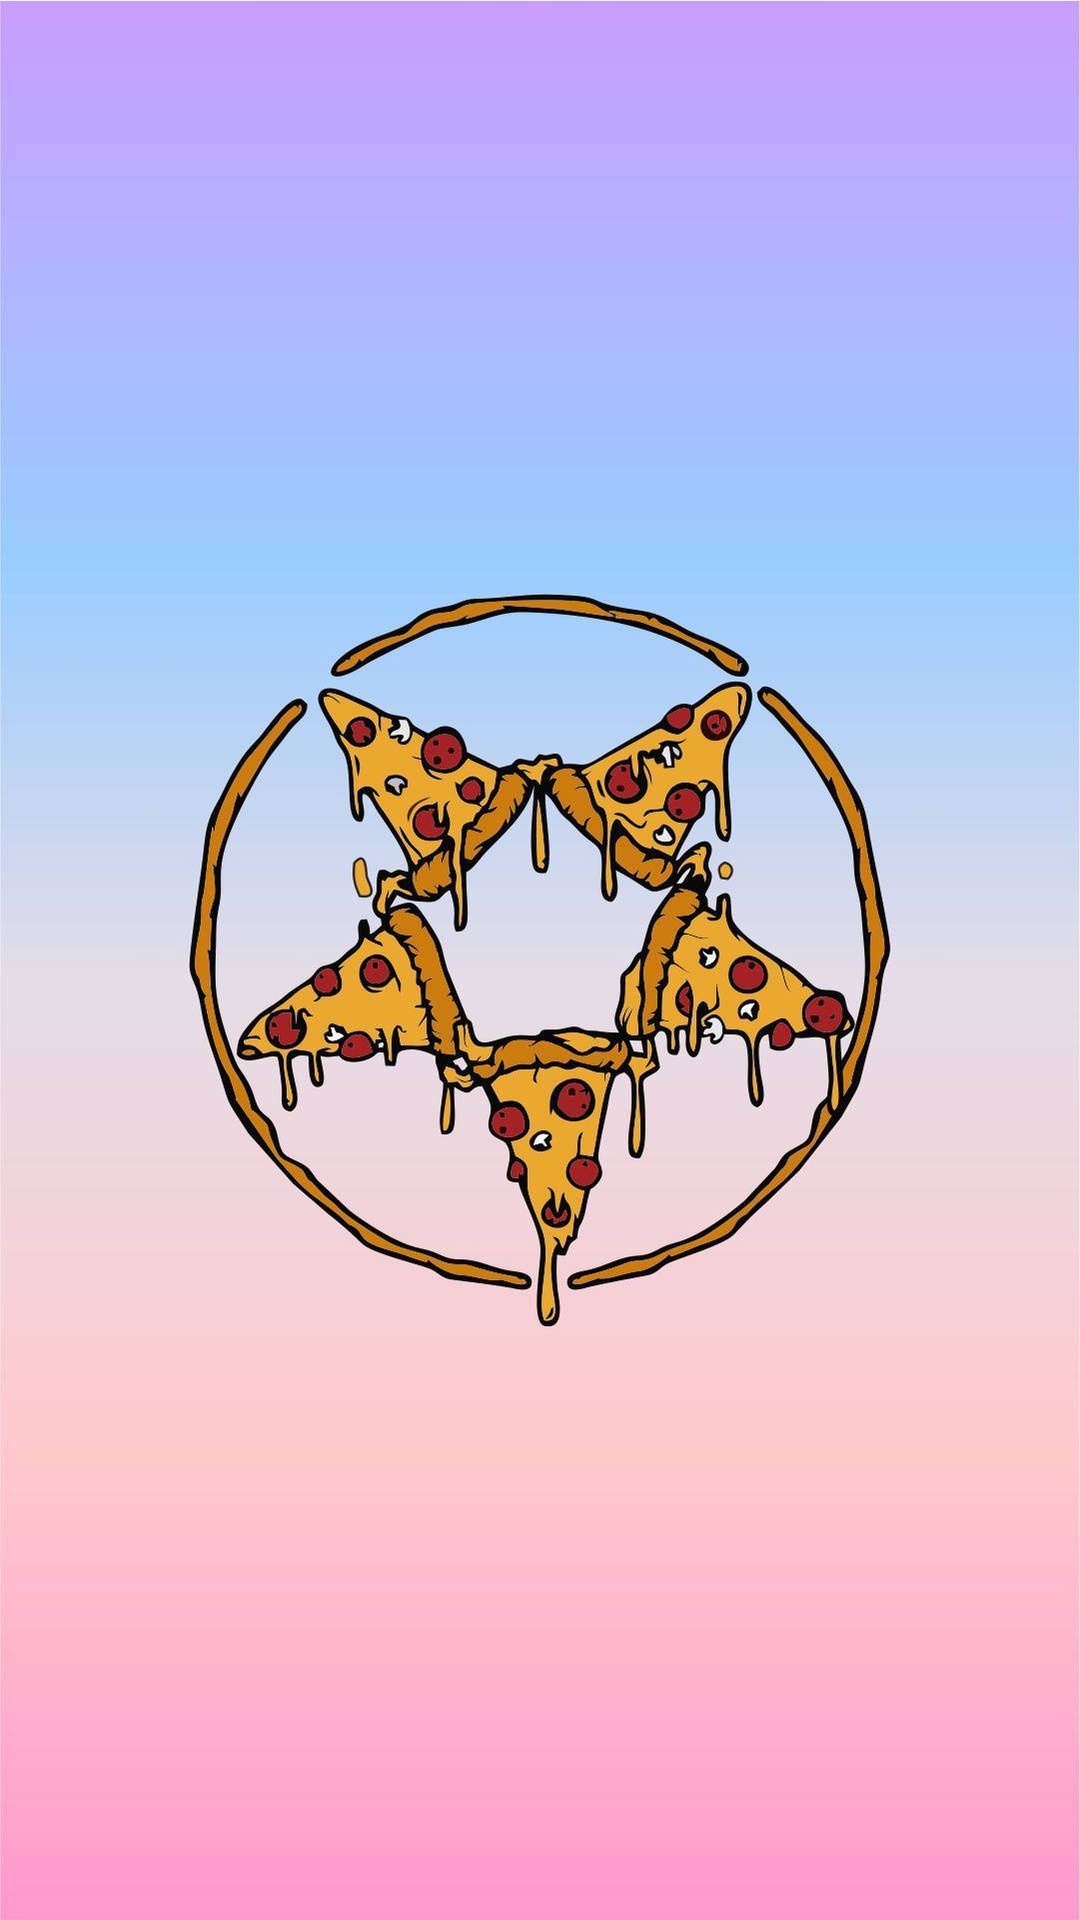 Caption: Unique Pepperoni Pizza Pentagram Design